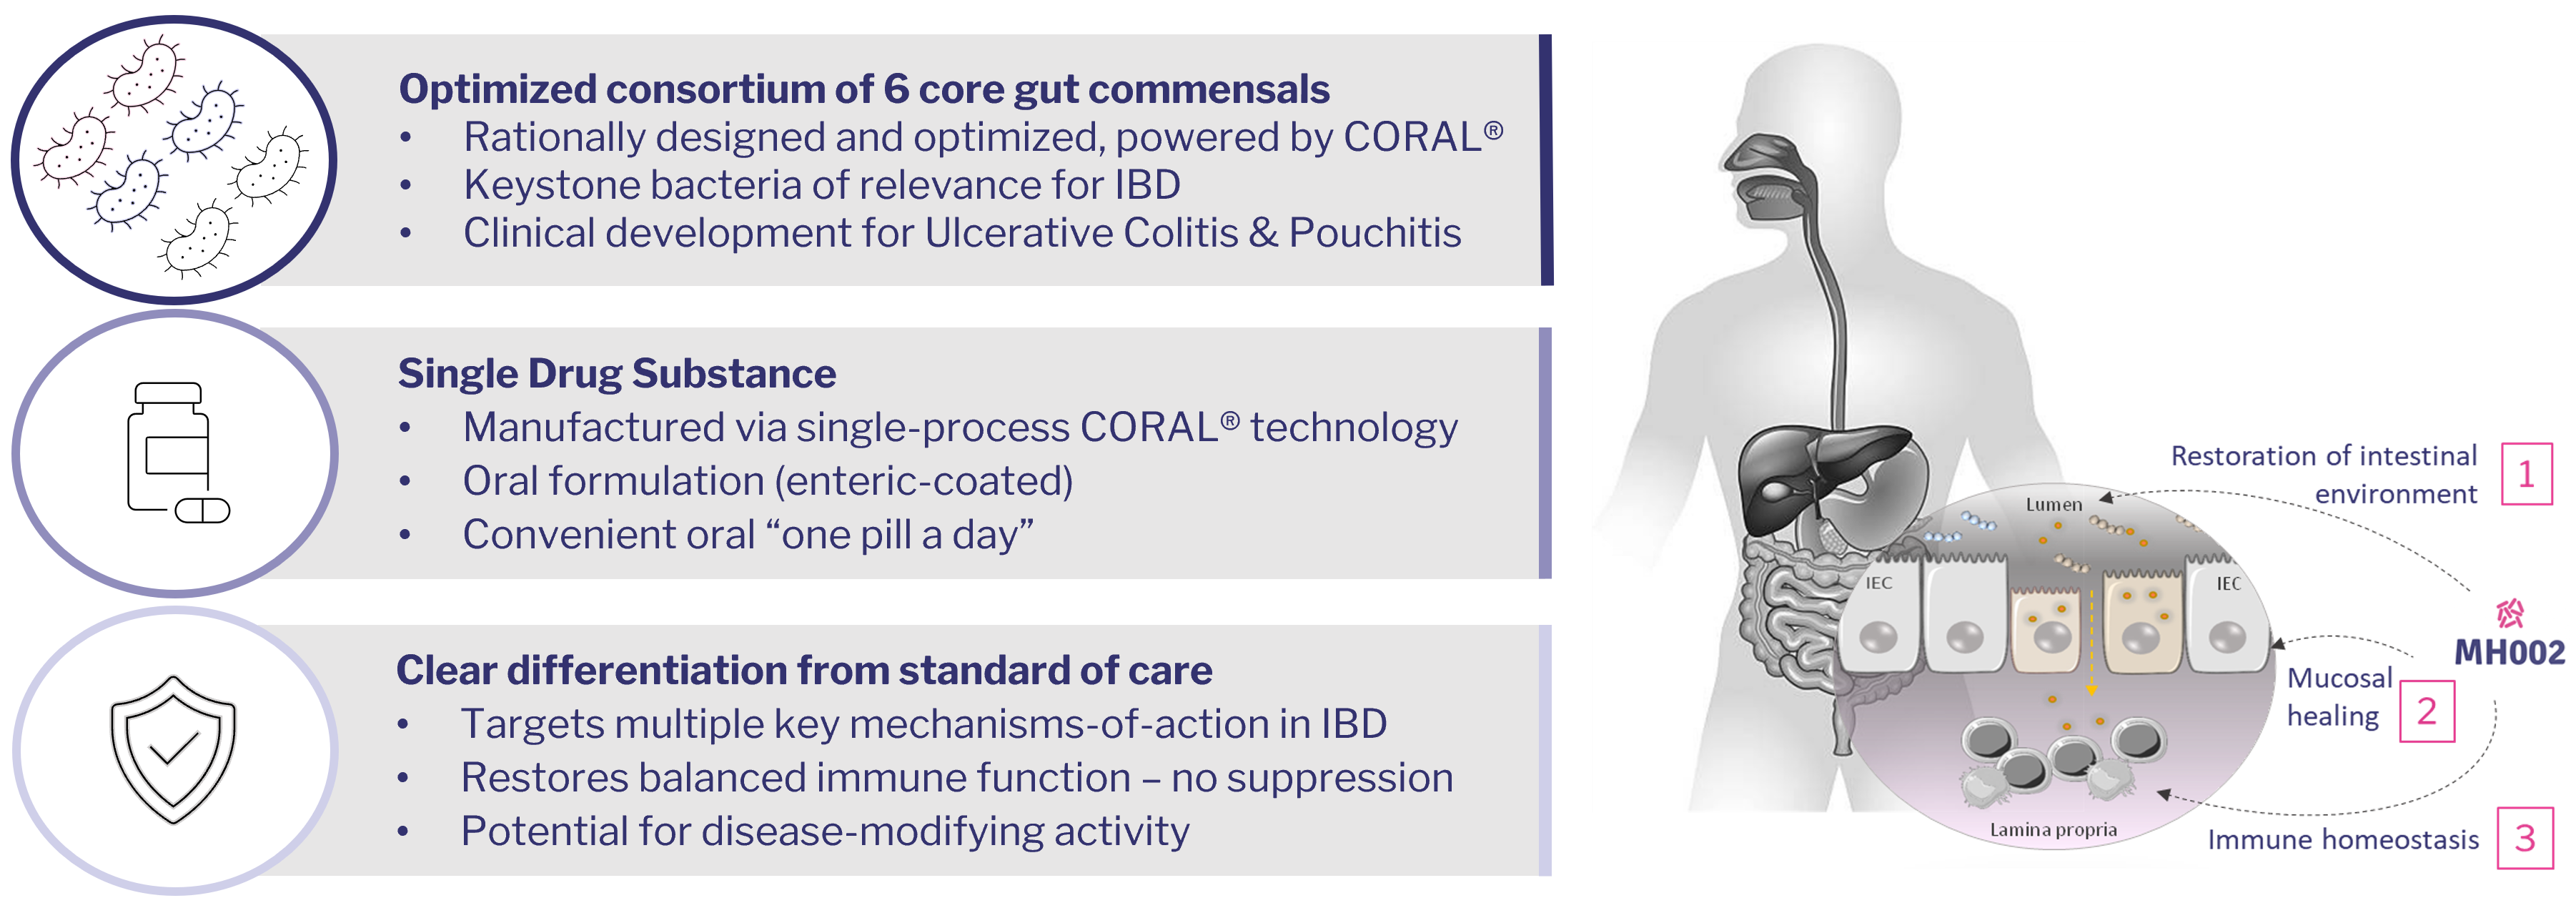 microbiome therapeutics Ulcerative colitis Crohn's disease treatment IBD